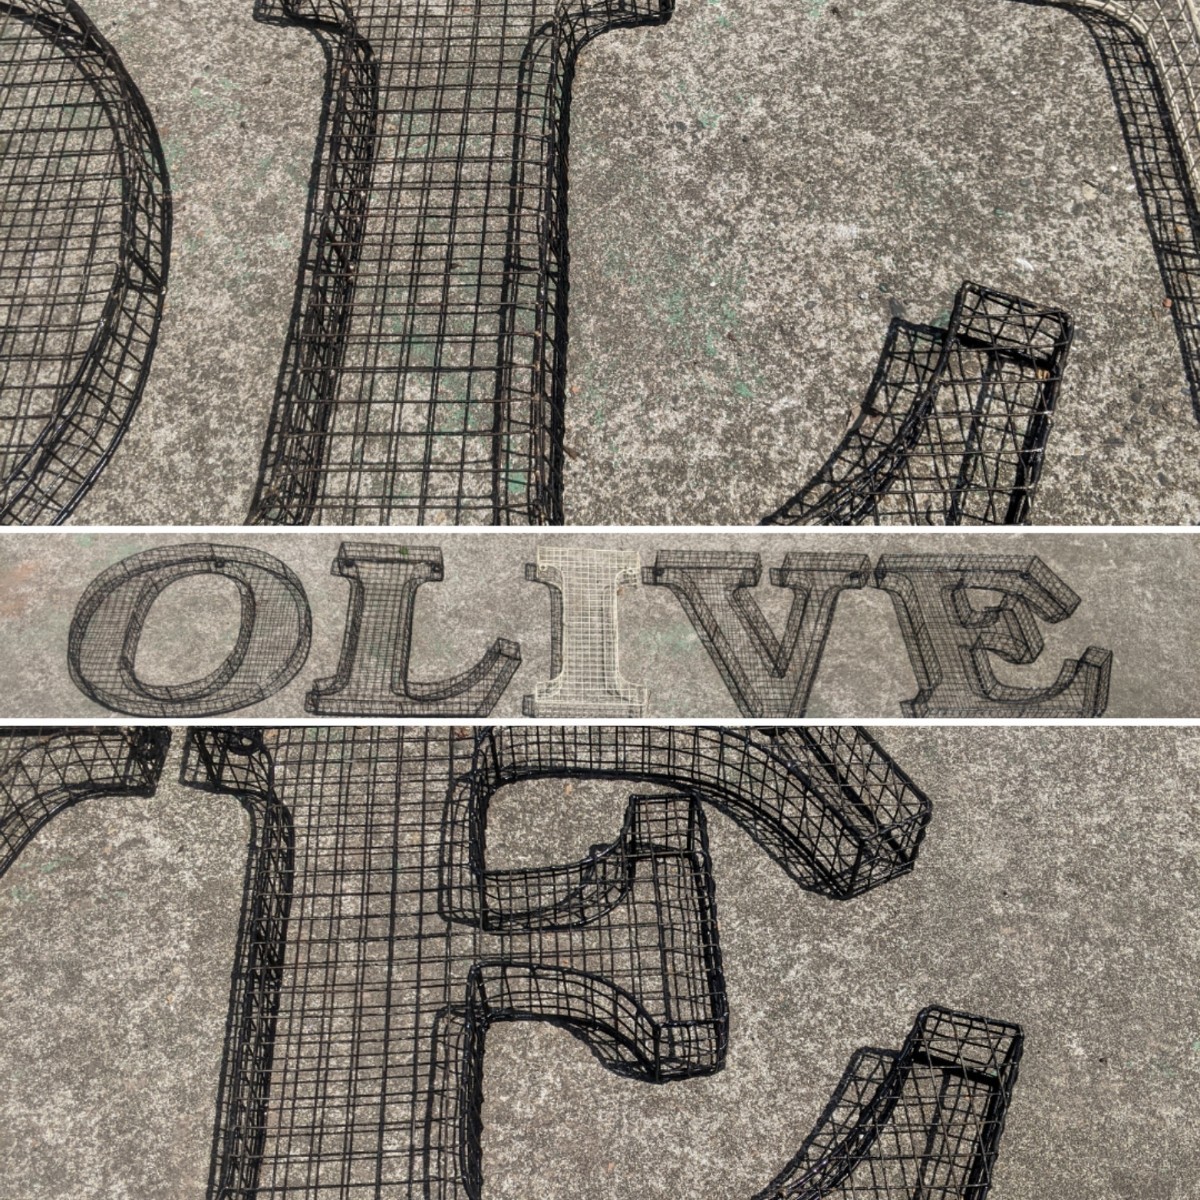 アルファベット看板 オリーブ 壁掛け看板 立体式 大型看板 OLIVE サイン #店舗什器 #オリーブショップ #オリーブオイル #イタリアン カフェ